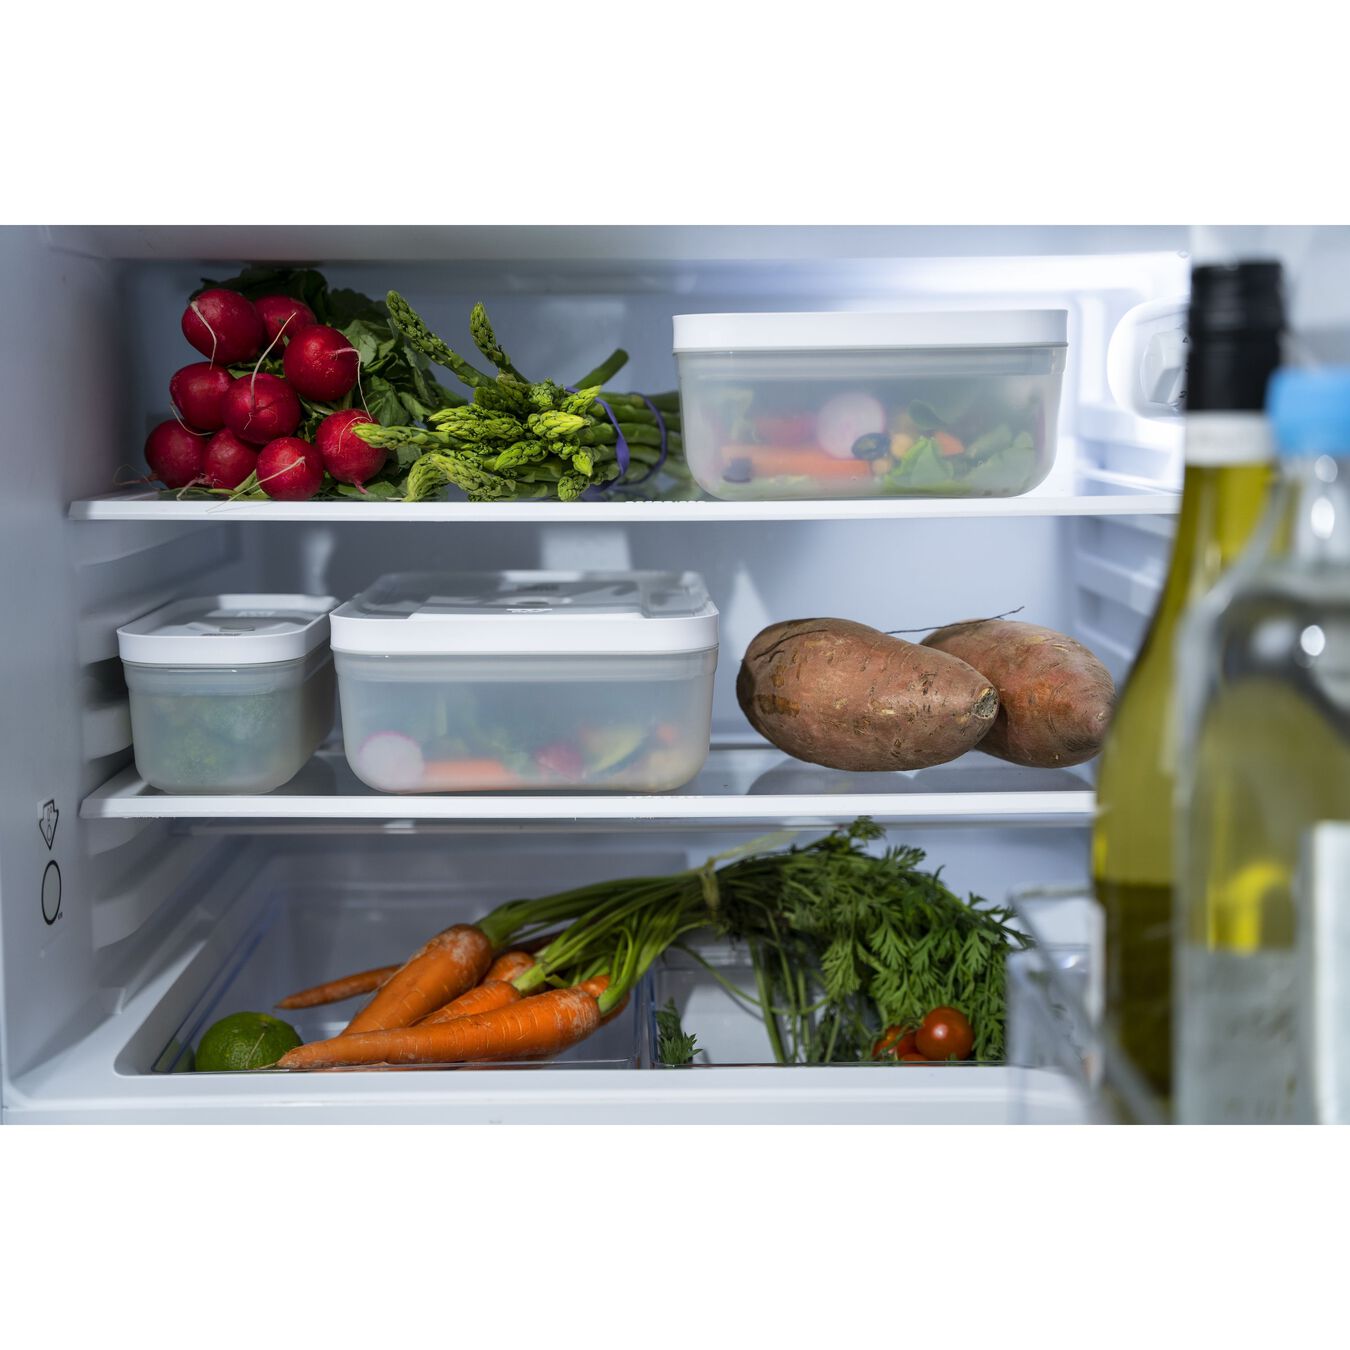 Caixa vácuo para frigorífico, Plástico, Semitransparente-Cinza,,large 5